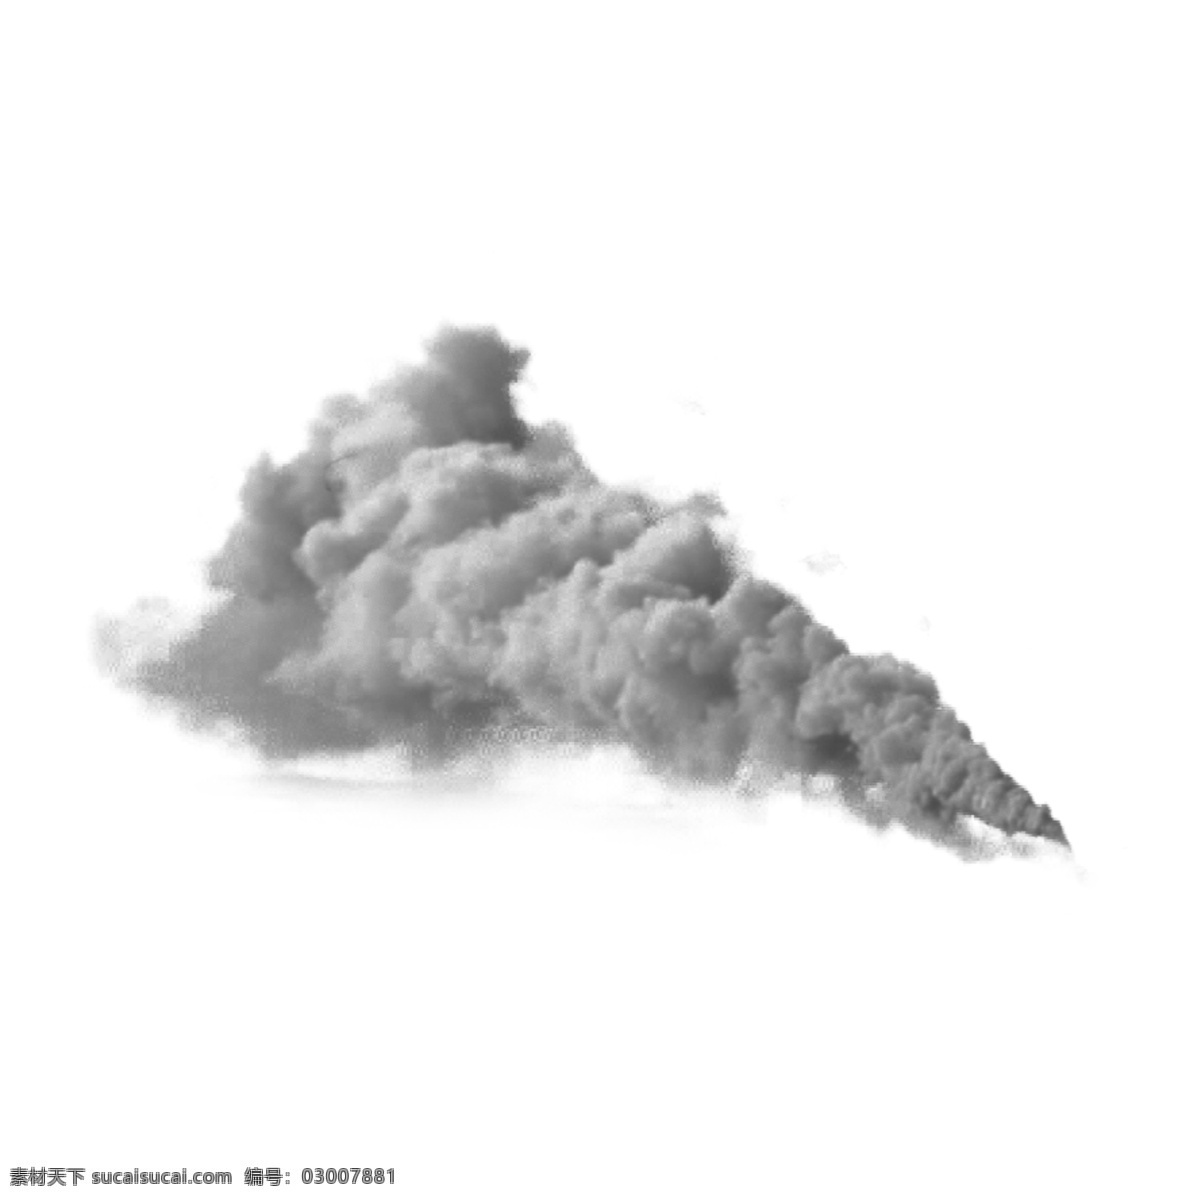 水彩 爆破 灰色 运动 创意 水墨画 抽象 线条 云朵 卡通 手绘 黑色 中国风 个性 画法 画技 墨水